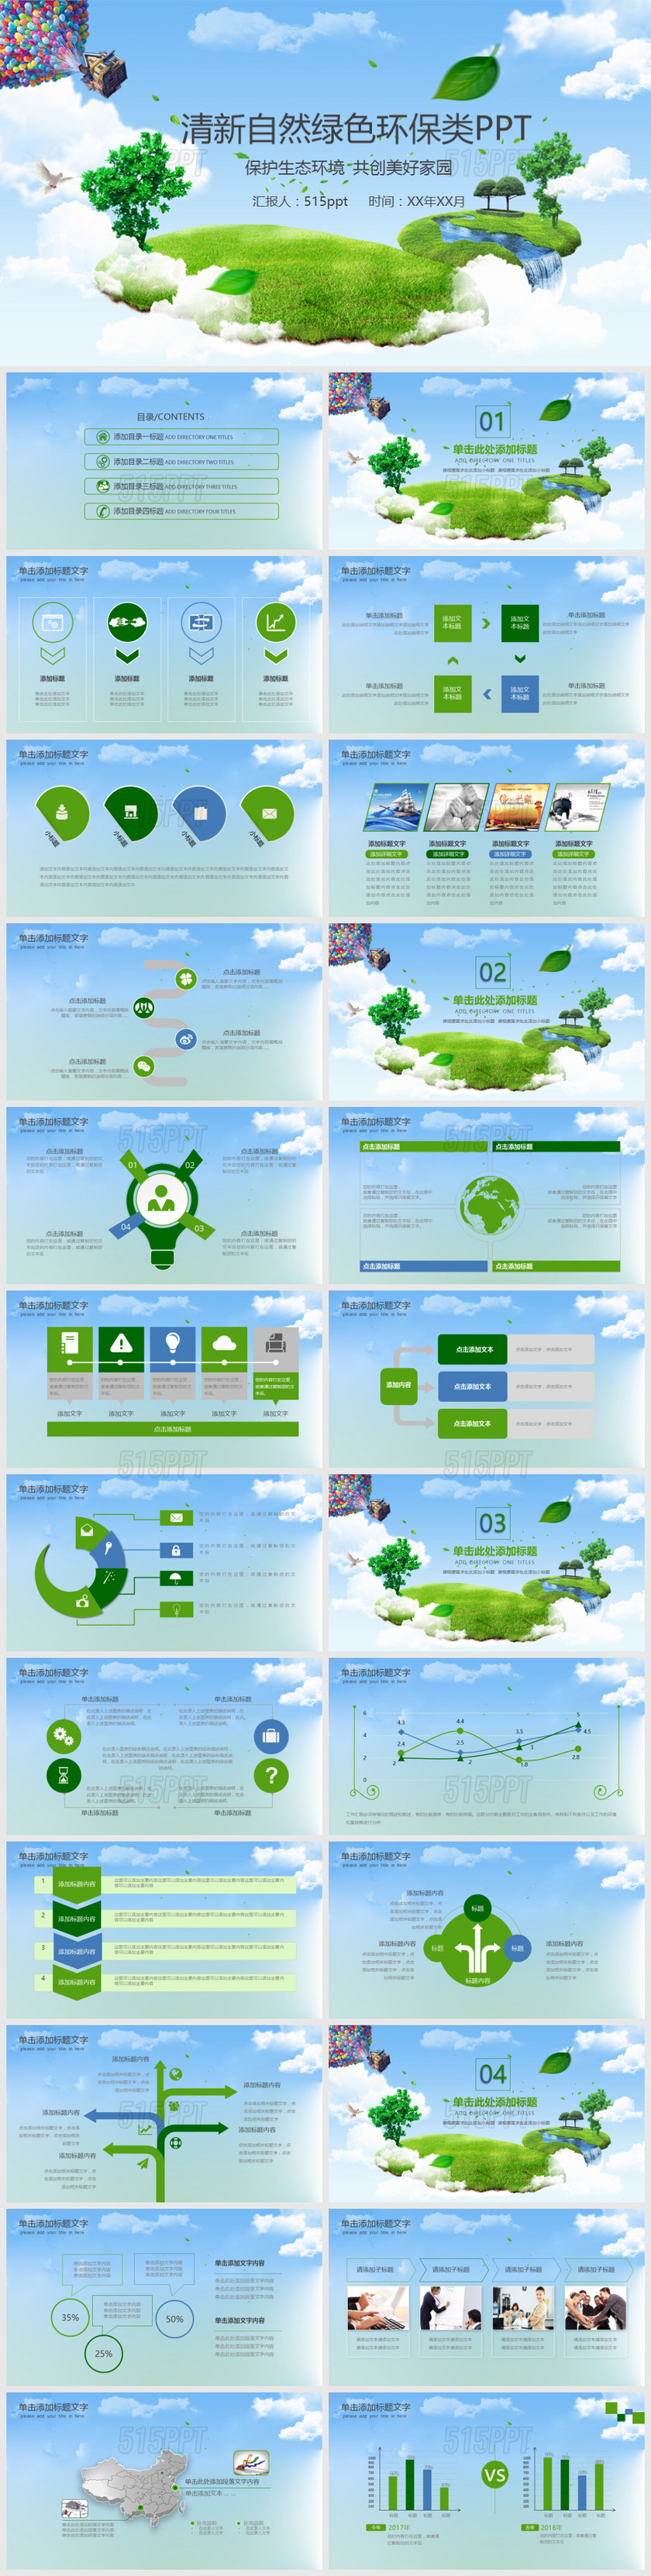 绿色城市环境垃圾分类低碳环保局PPT模板1